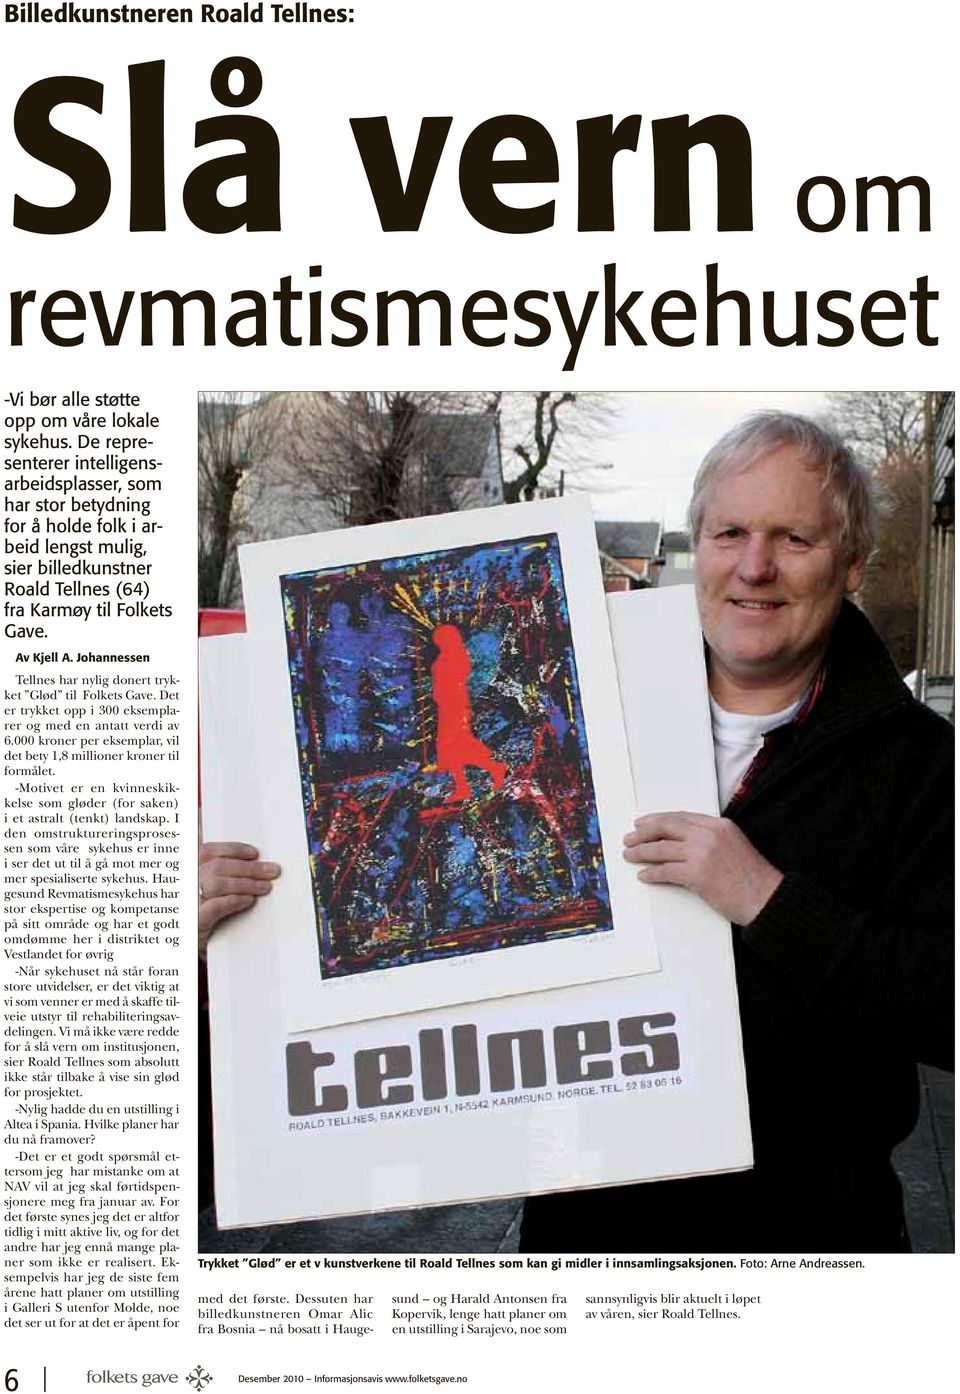 Johannessen Tellnes har nylig donert trykket Glød til Folkets Gave. Det er trykket opp i 300 eksemplarer og med en antatt verdi av 6.